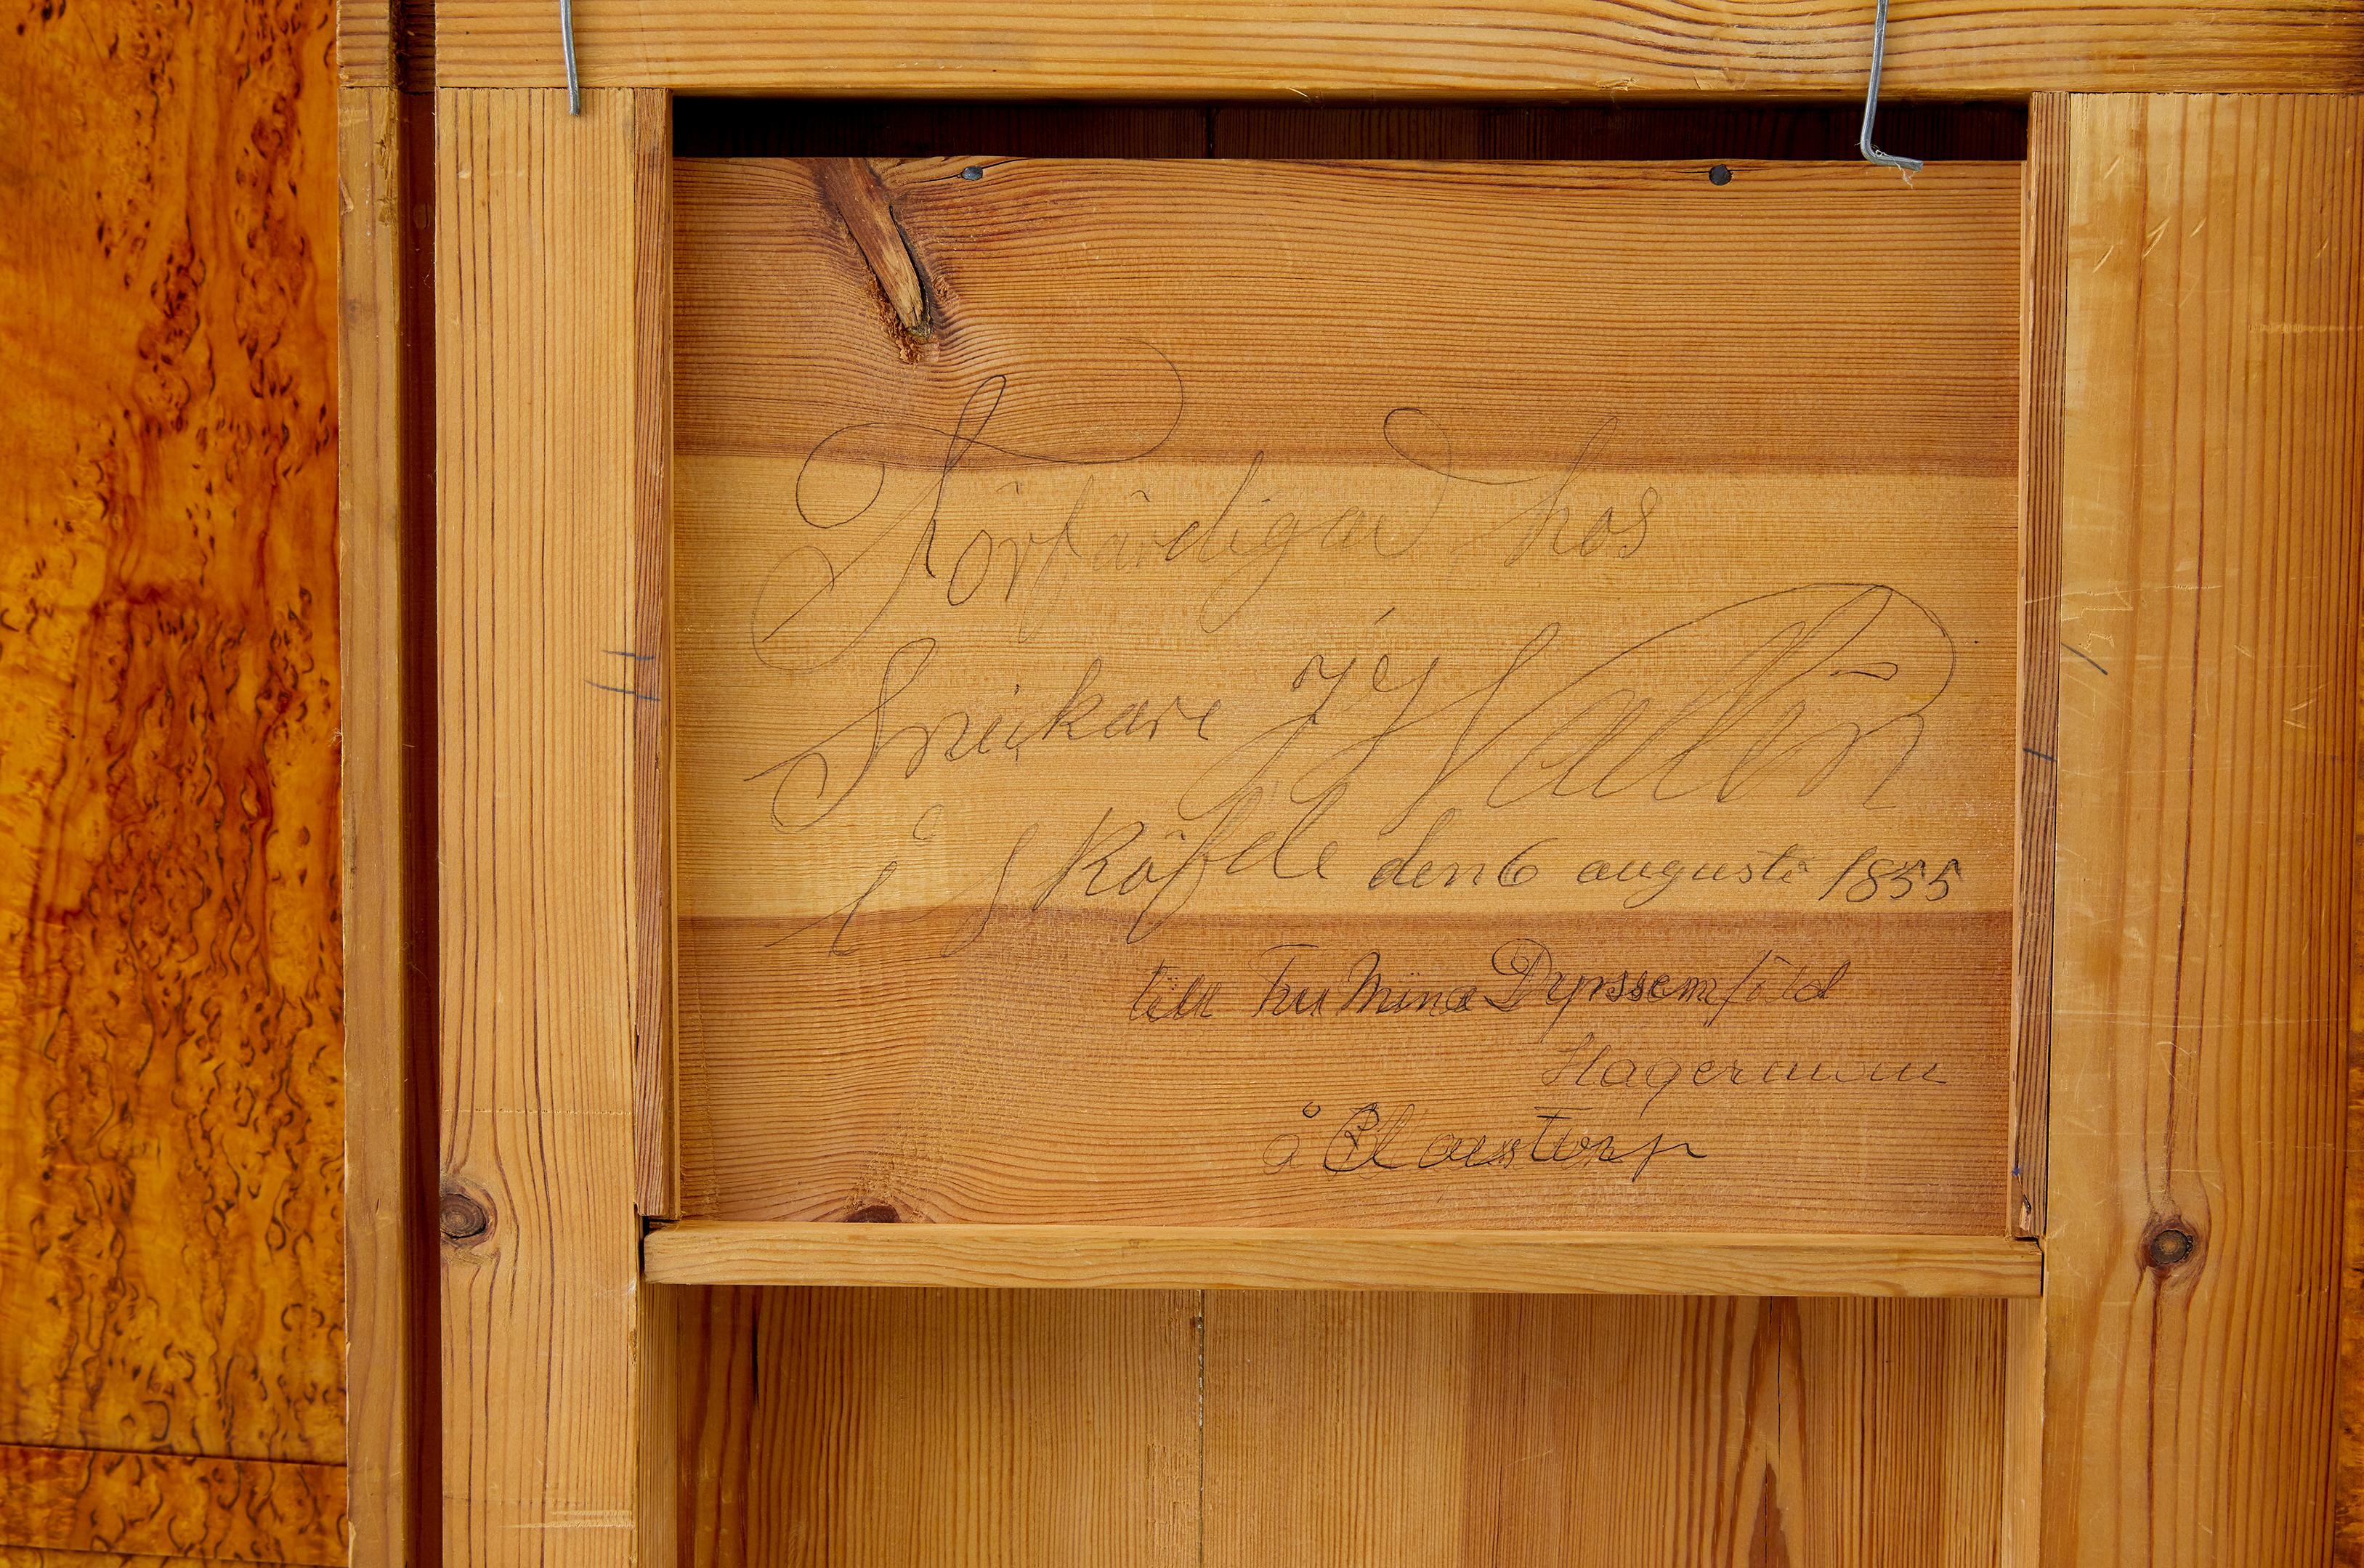 Wunderschöner Birkenwurzel-Schreibtisch um 1855.

Wir freuen uns, dieses Stück zum Verkauf anbieten zu können.  Reichlich Birkenwurzel-Furniere auf jeder Oberfläche verwendet.

Passende Birkenfurniere, die sich über die gesamte Front erstrecken. 